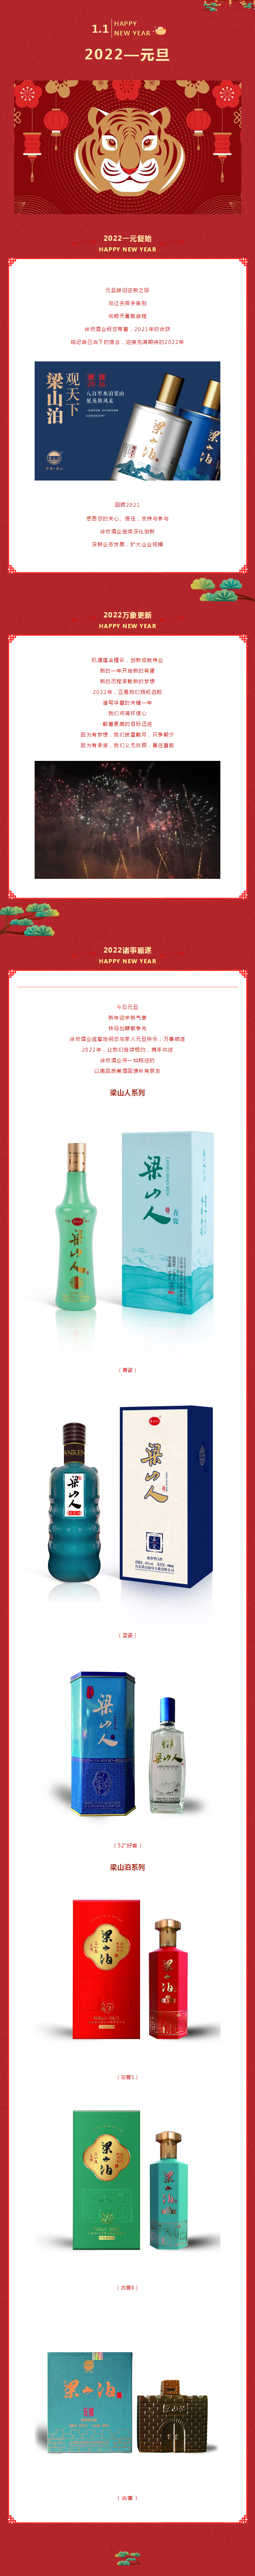 徐坊酒业-_-用一瓶好酒，开启2022年的新气象_05